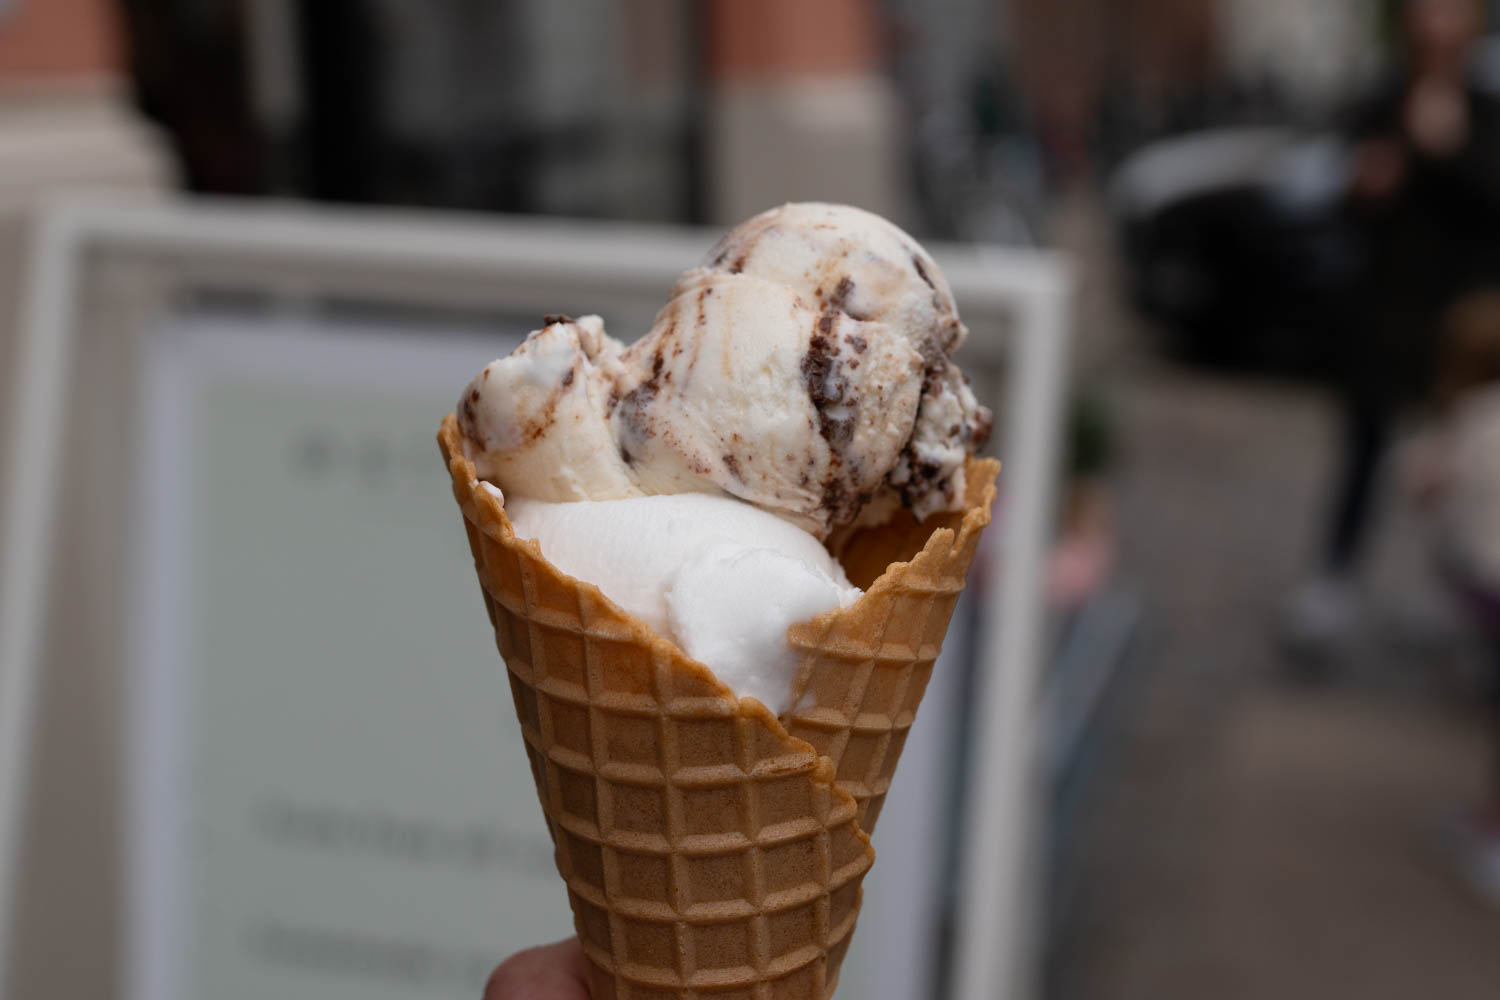 Østerberg Ice Cream